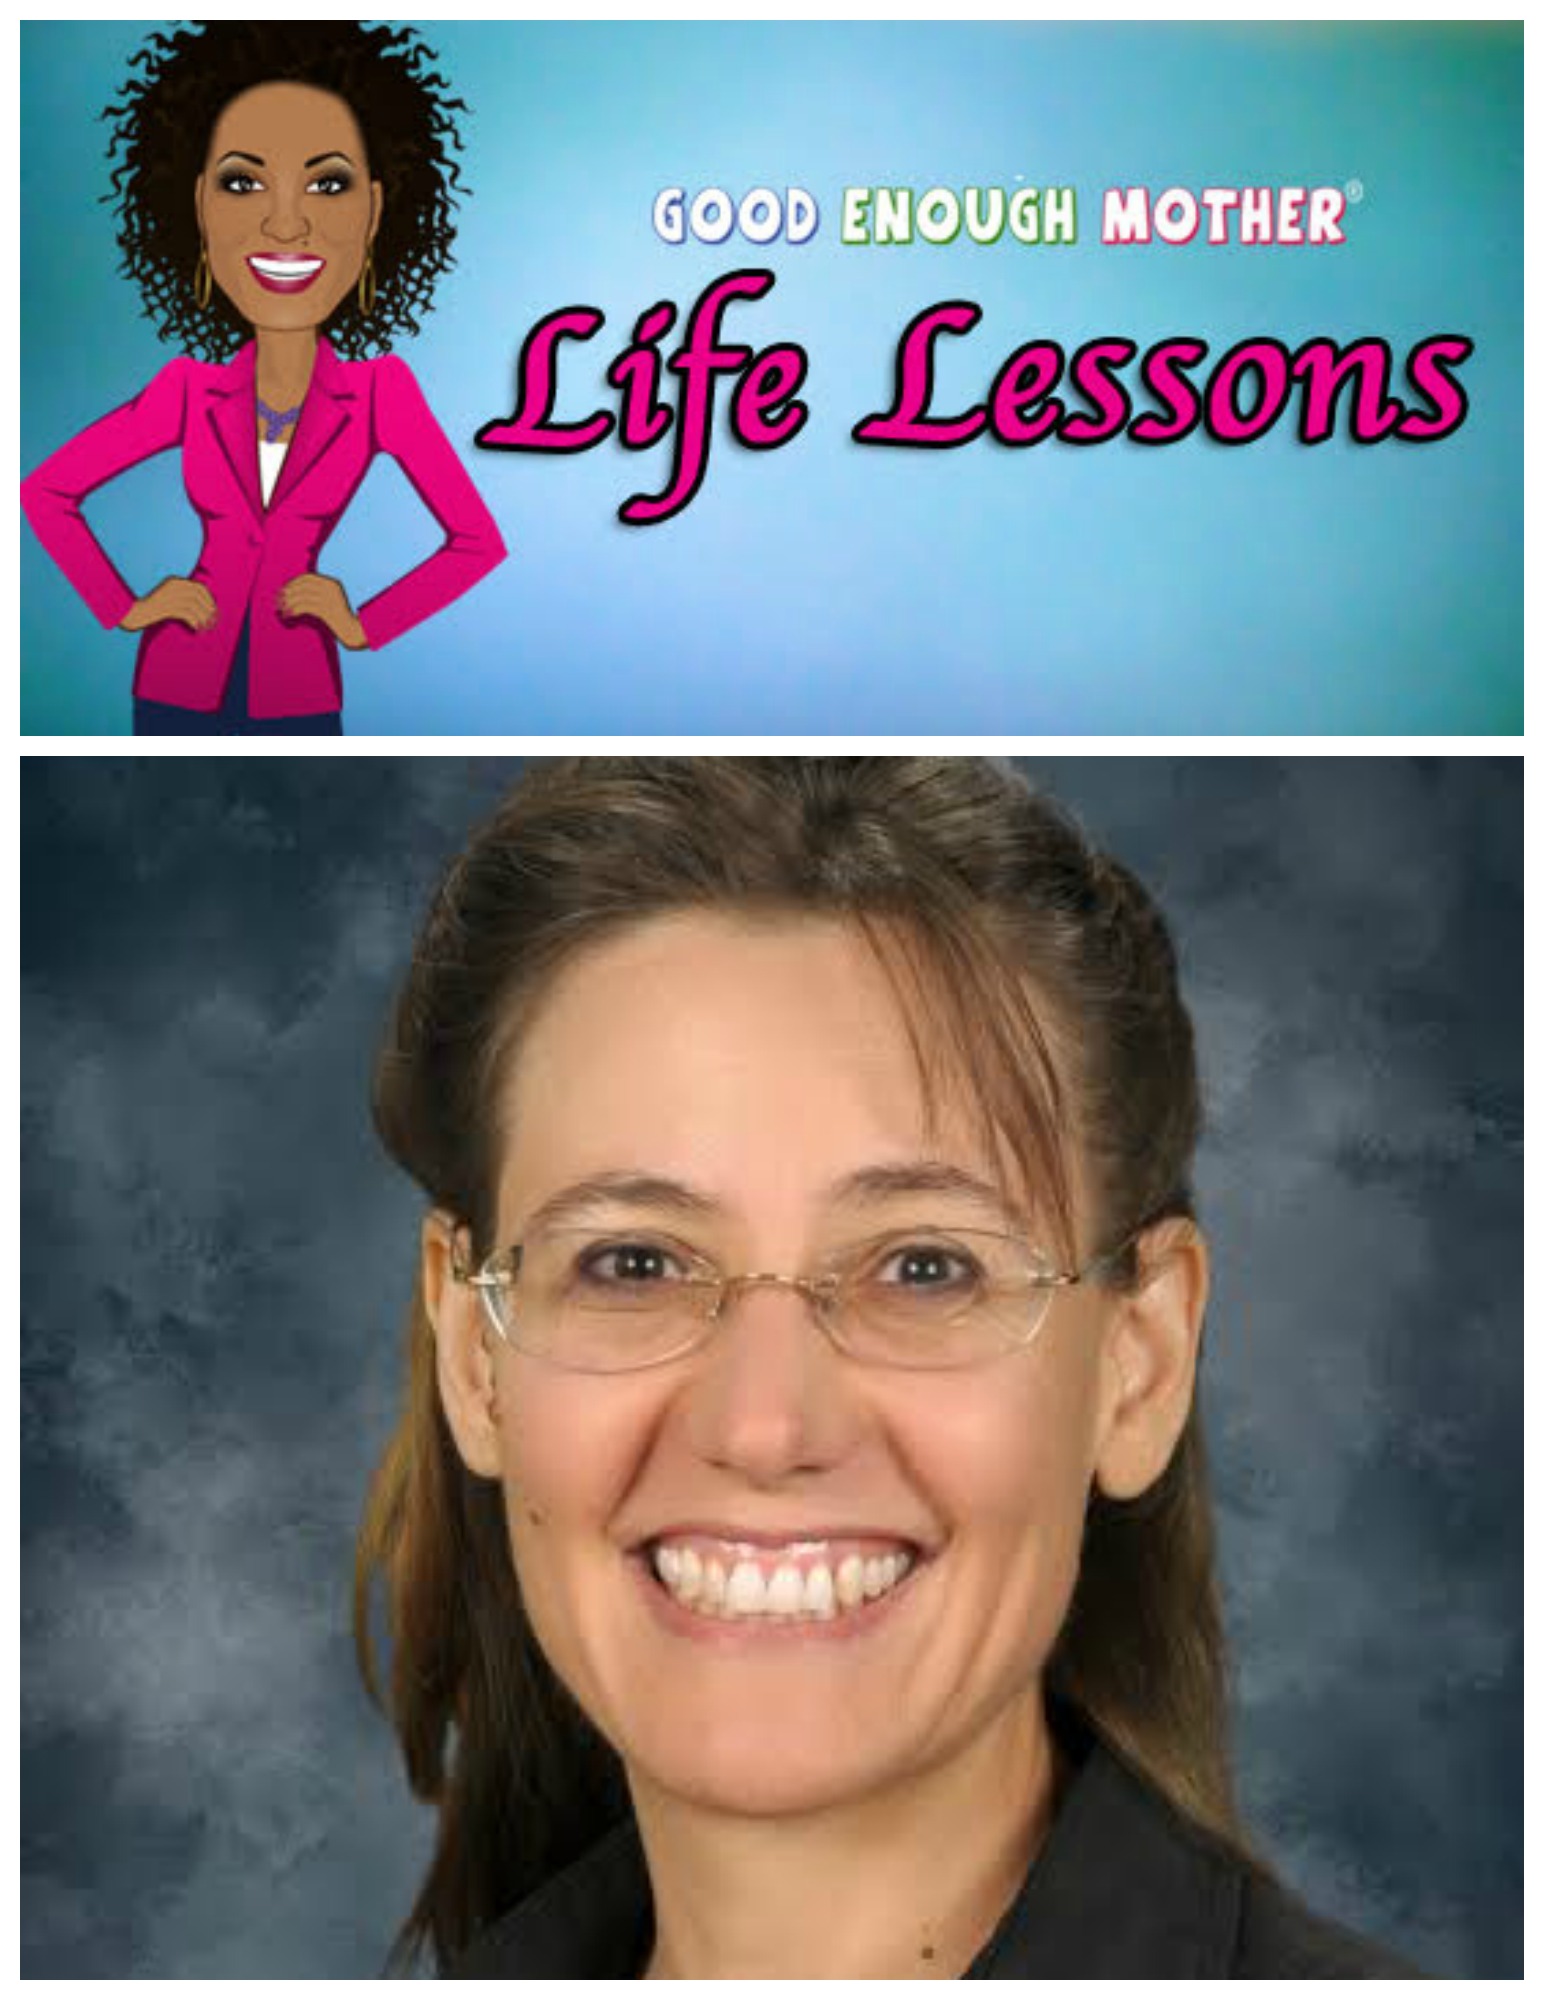 Life Lessons: Rachel Heslin